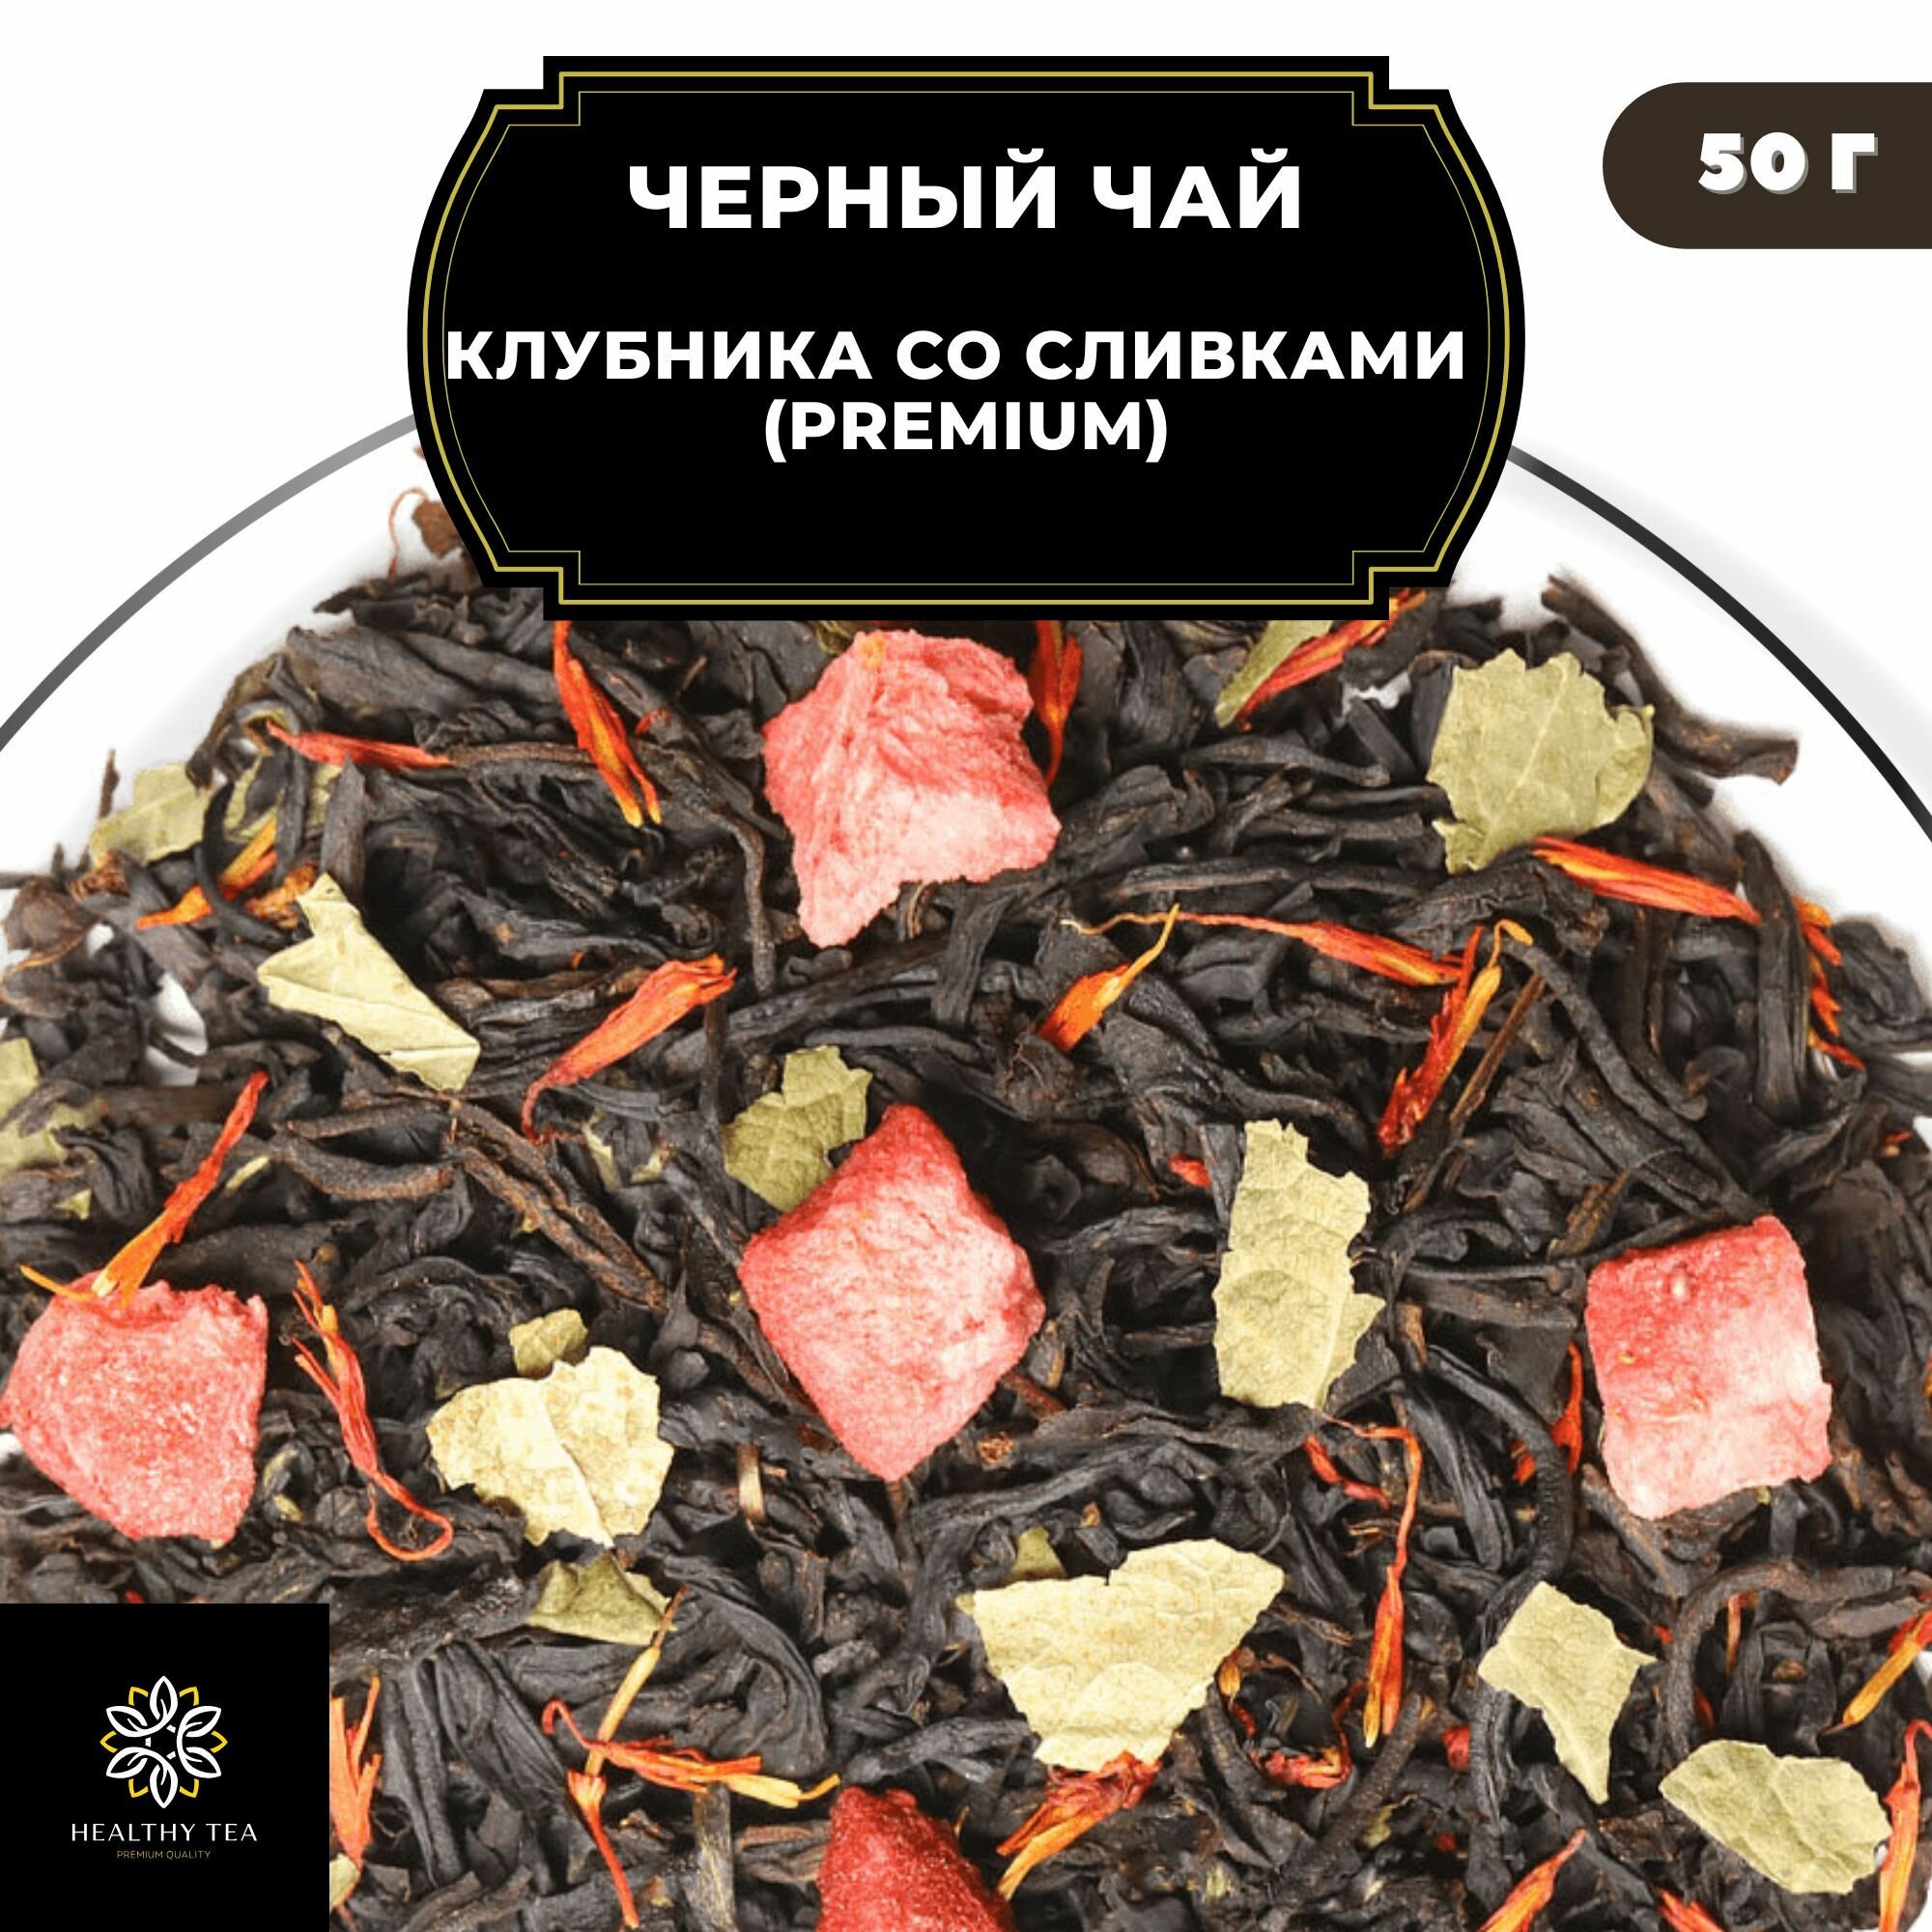 Цейлонский Черный чай с клубникой и сафлором "Клубника со сливками" (Premium) Полезный чай / HEALTHY TEA, 50 гр